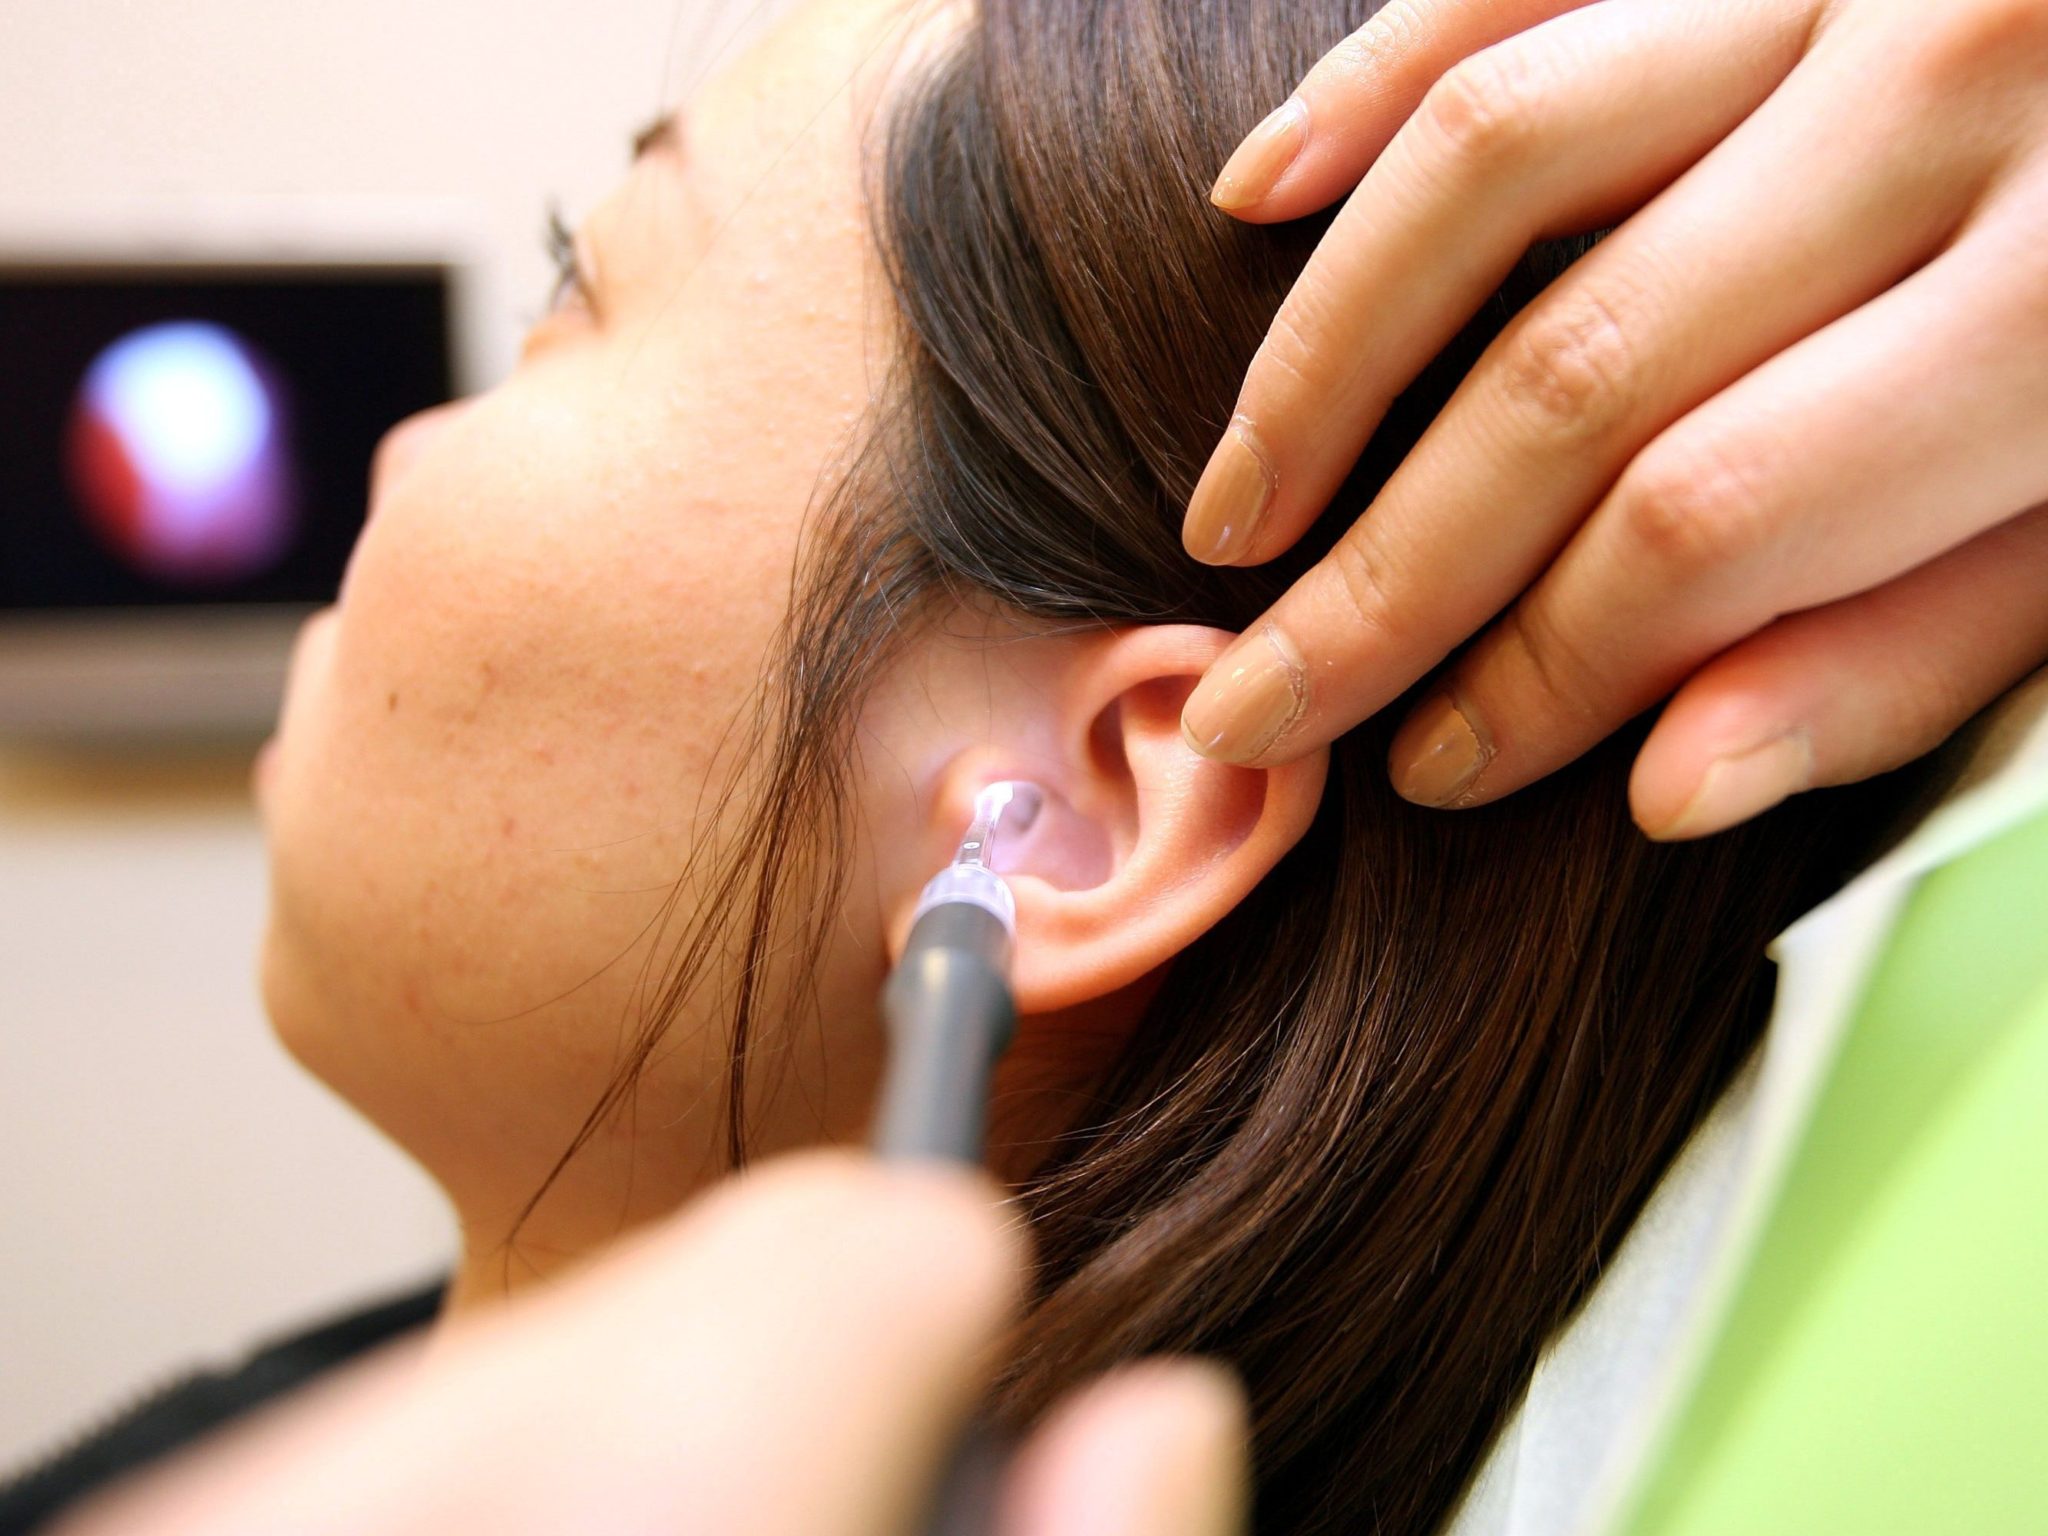 fire ear wax removal